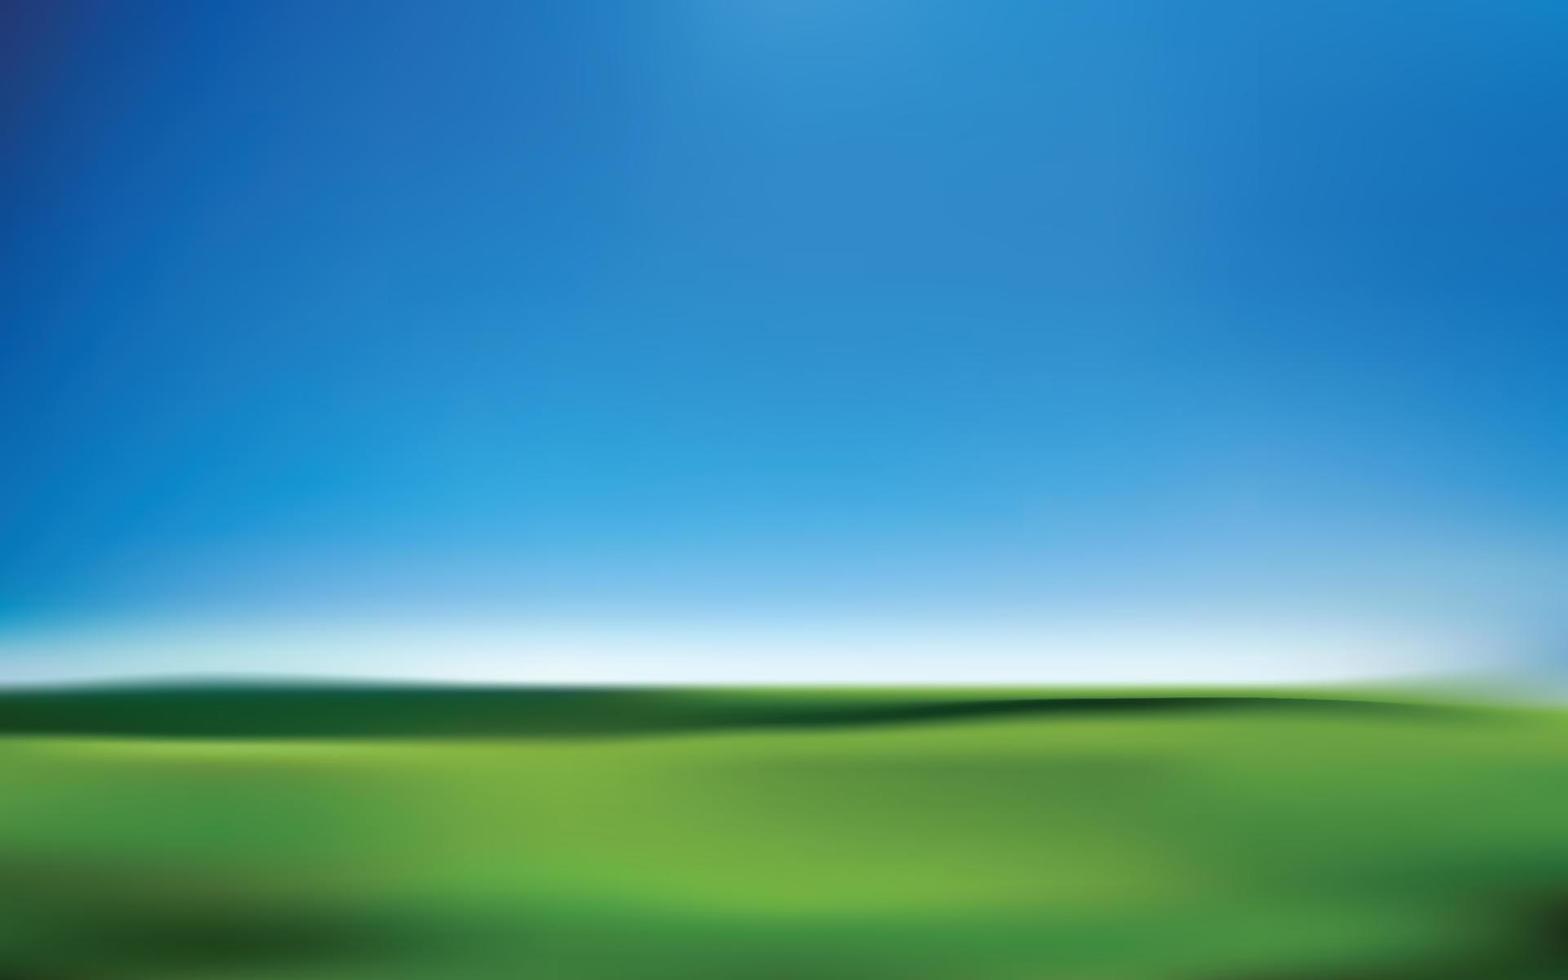 abstrakt bakgrund med grön gräs och blå himmel, vektor illustration.